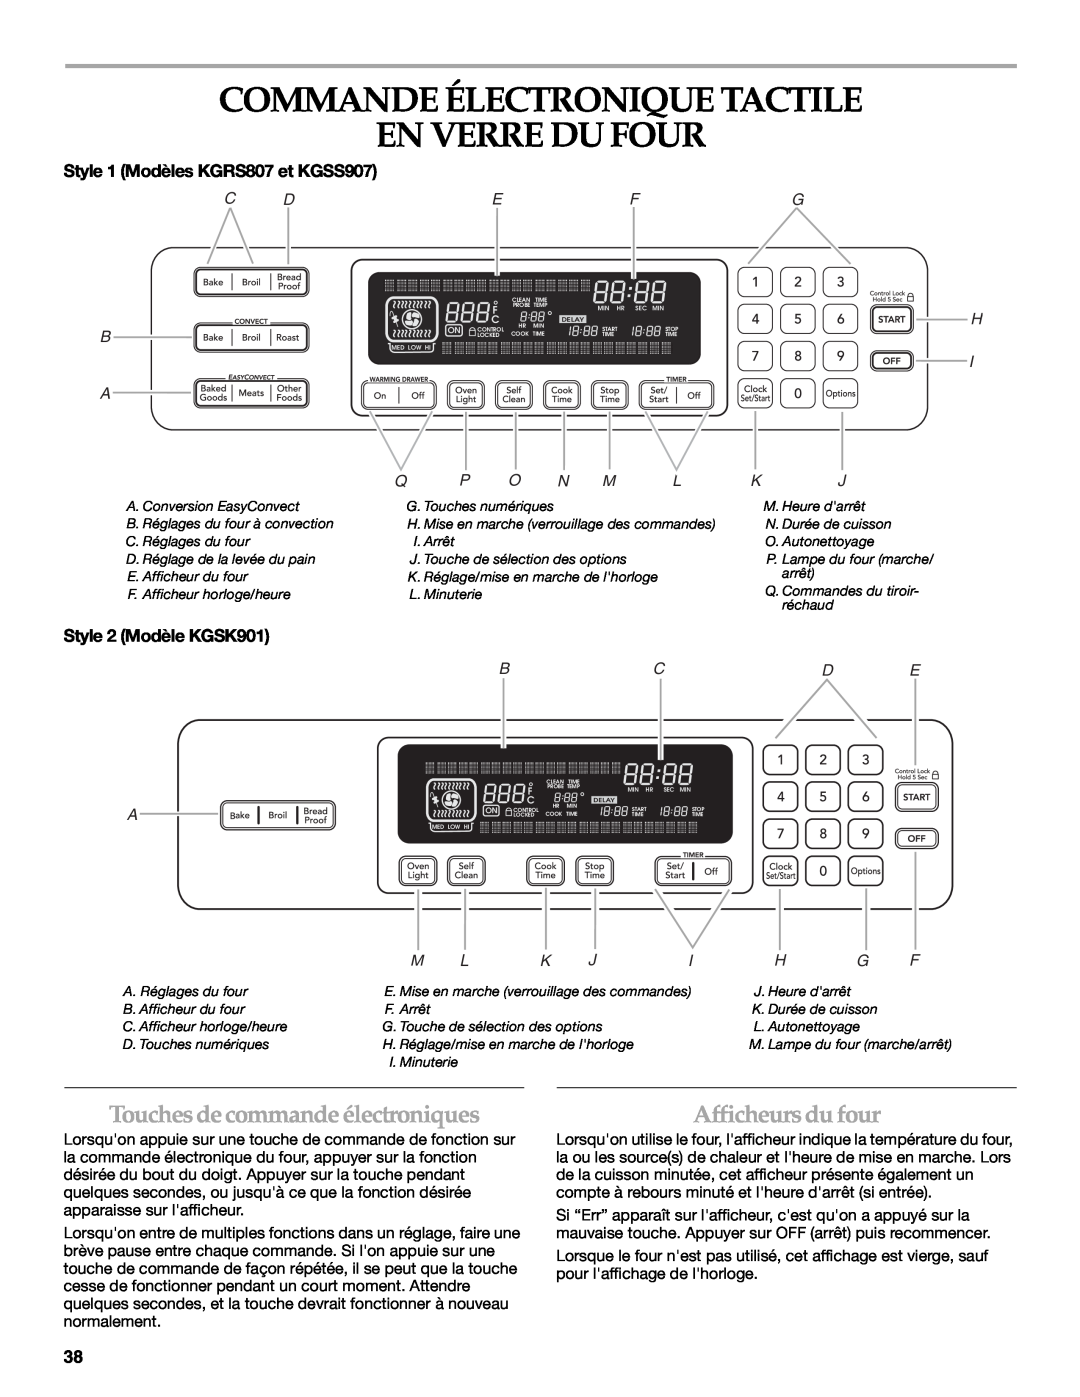 KitchenAid KGRS807 Commande Électronique Tactile En Verre Du Four, Touches decommandeélectroniques, Afficheurs du four 